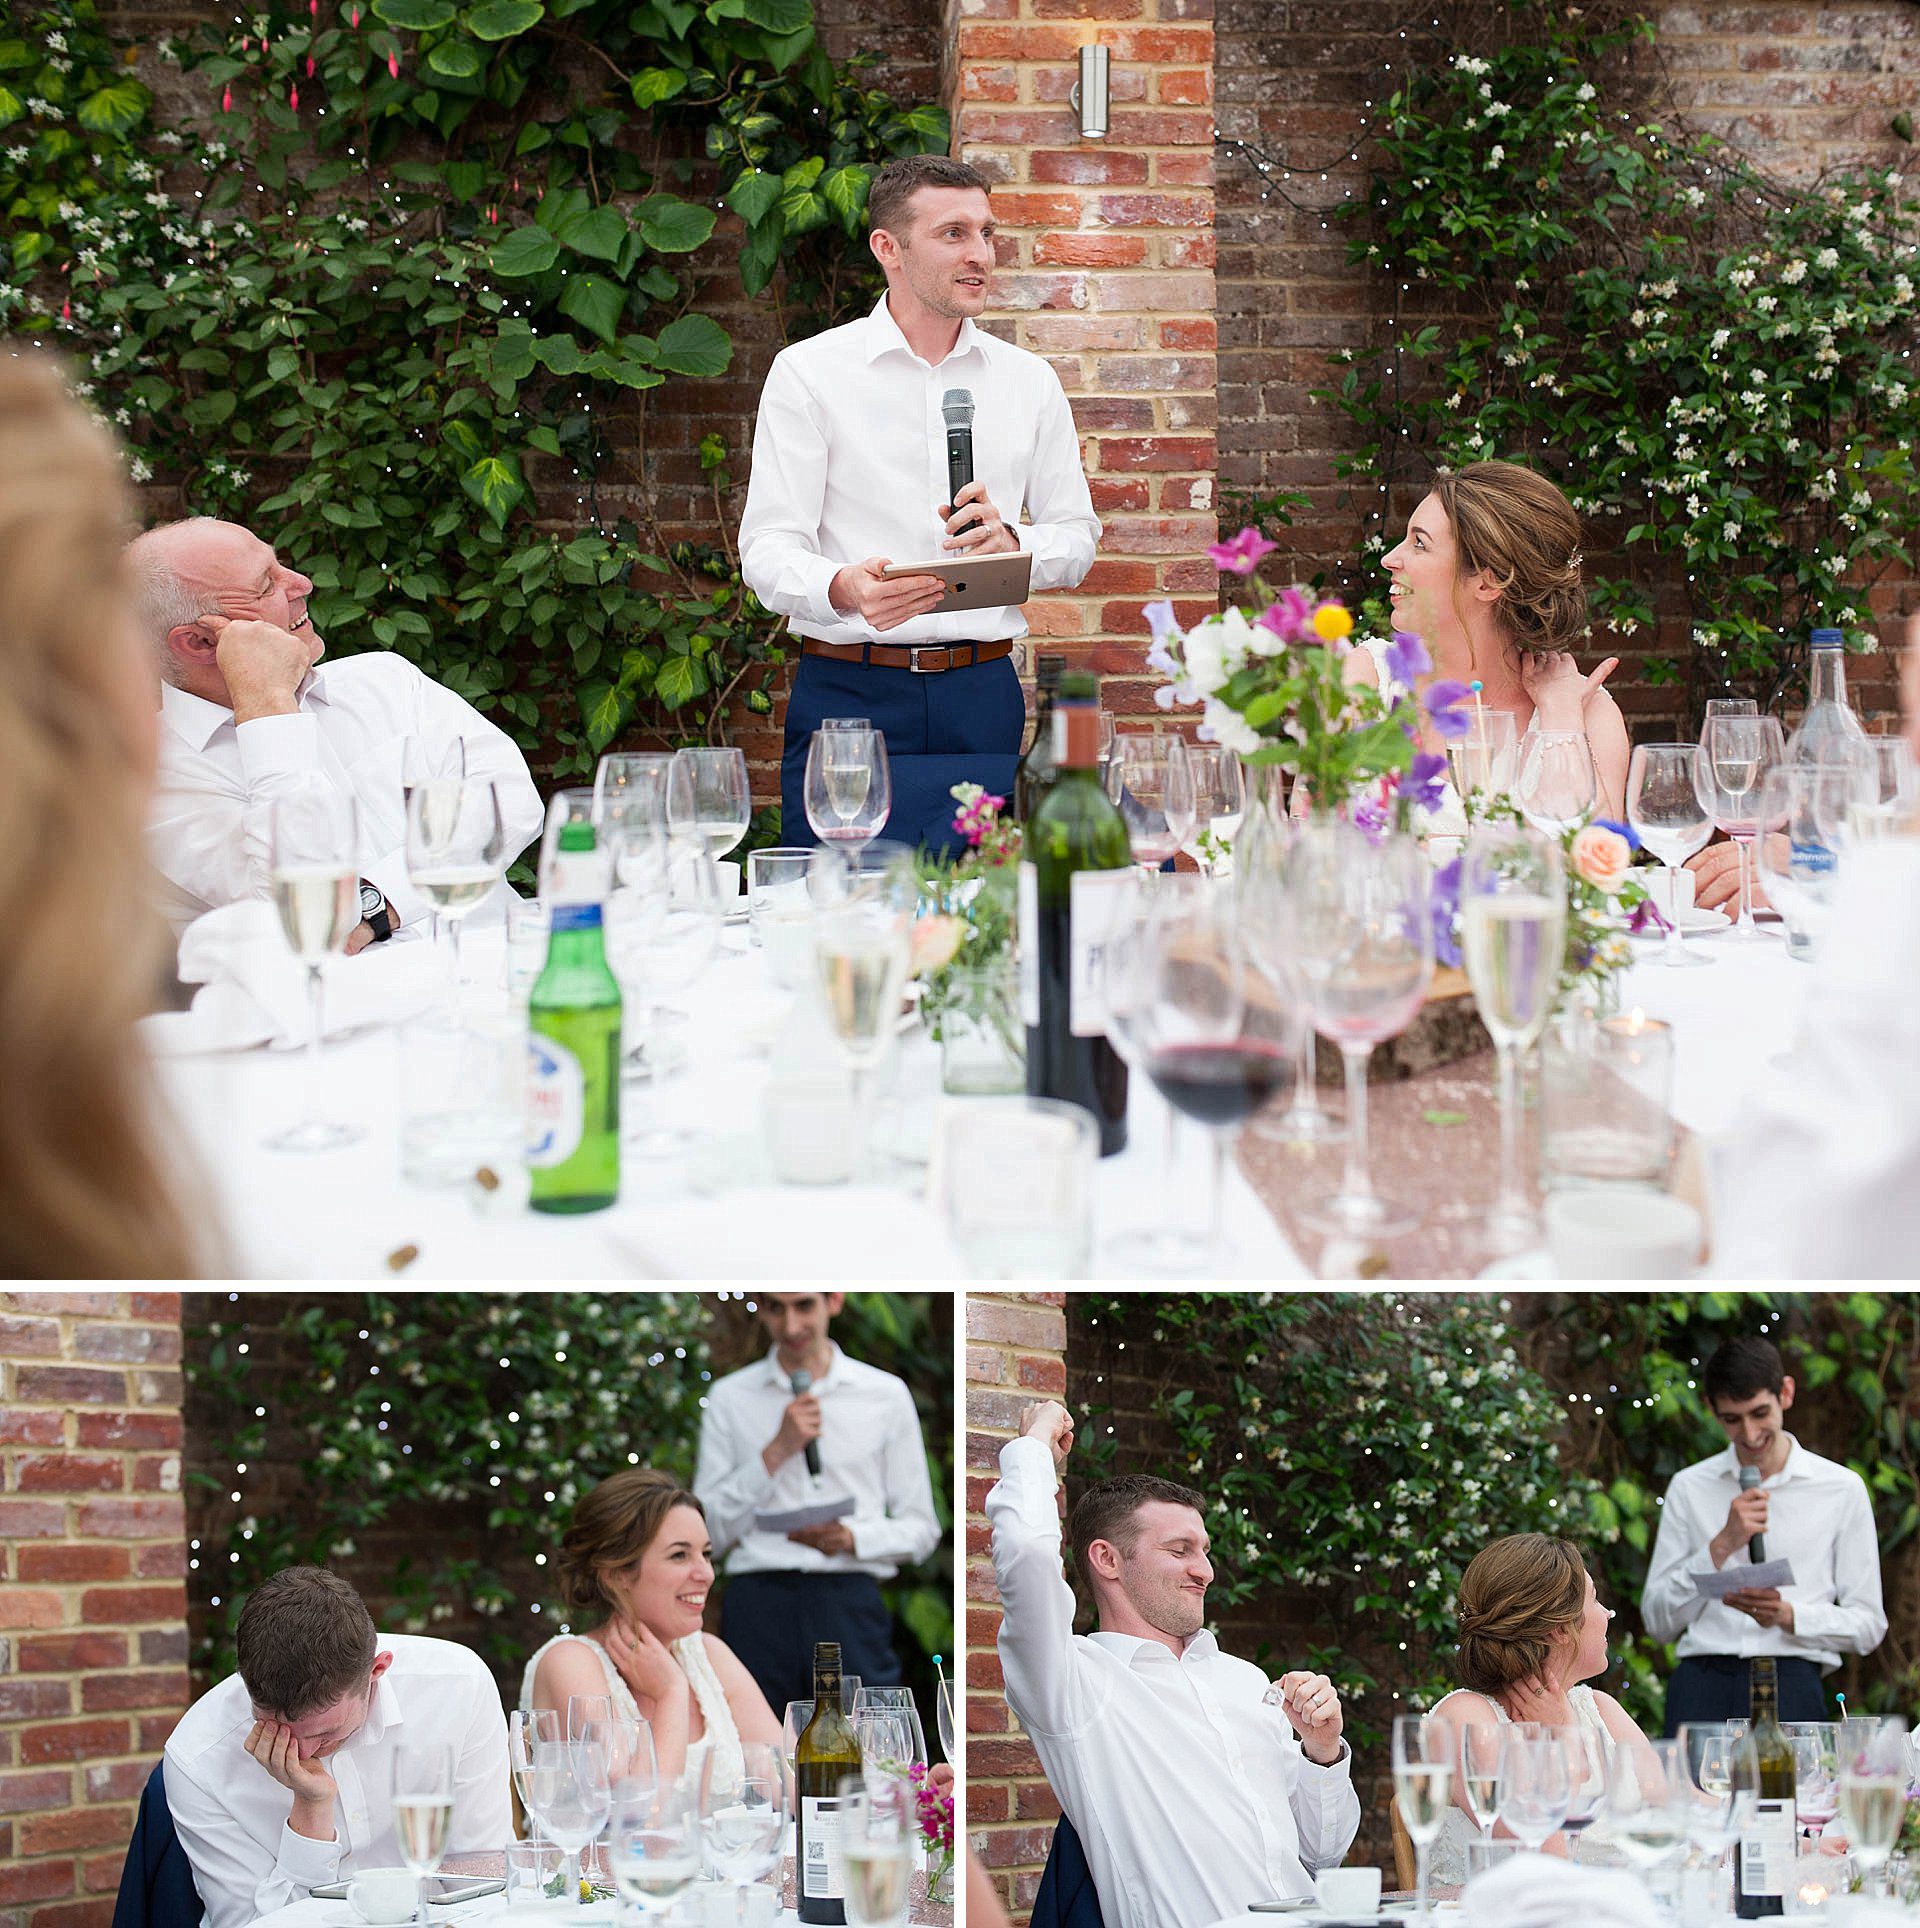 Surrey wedding - the speeches